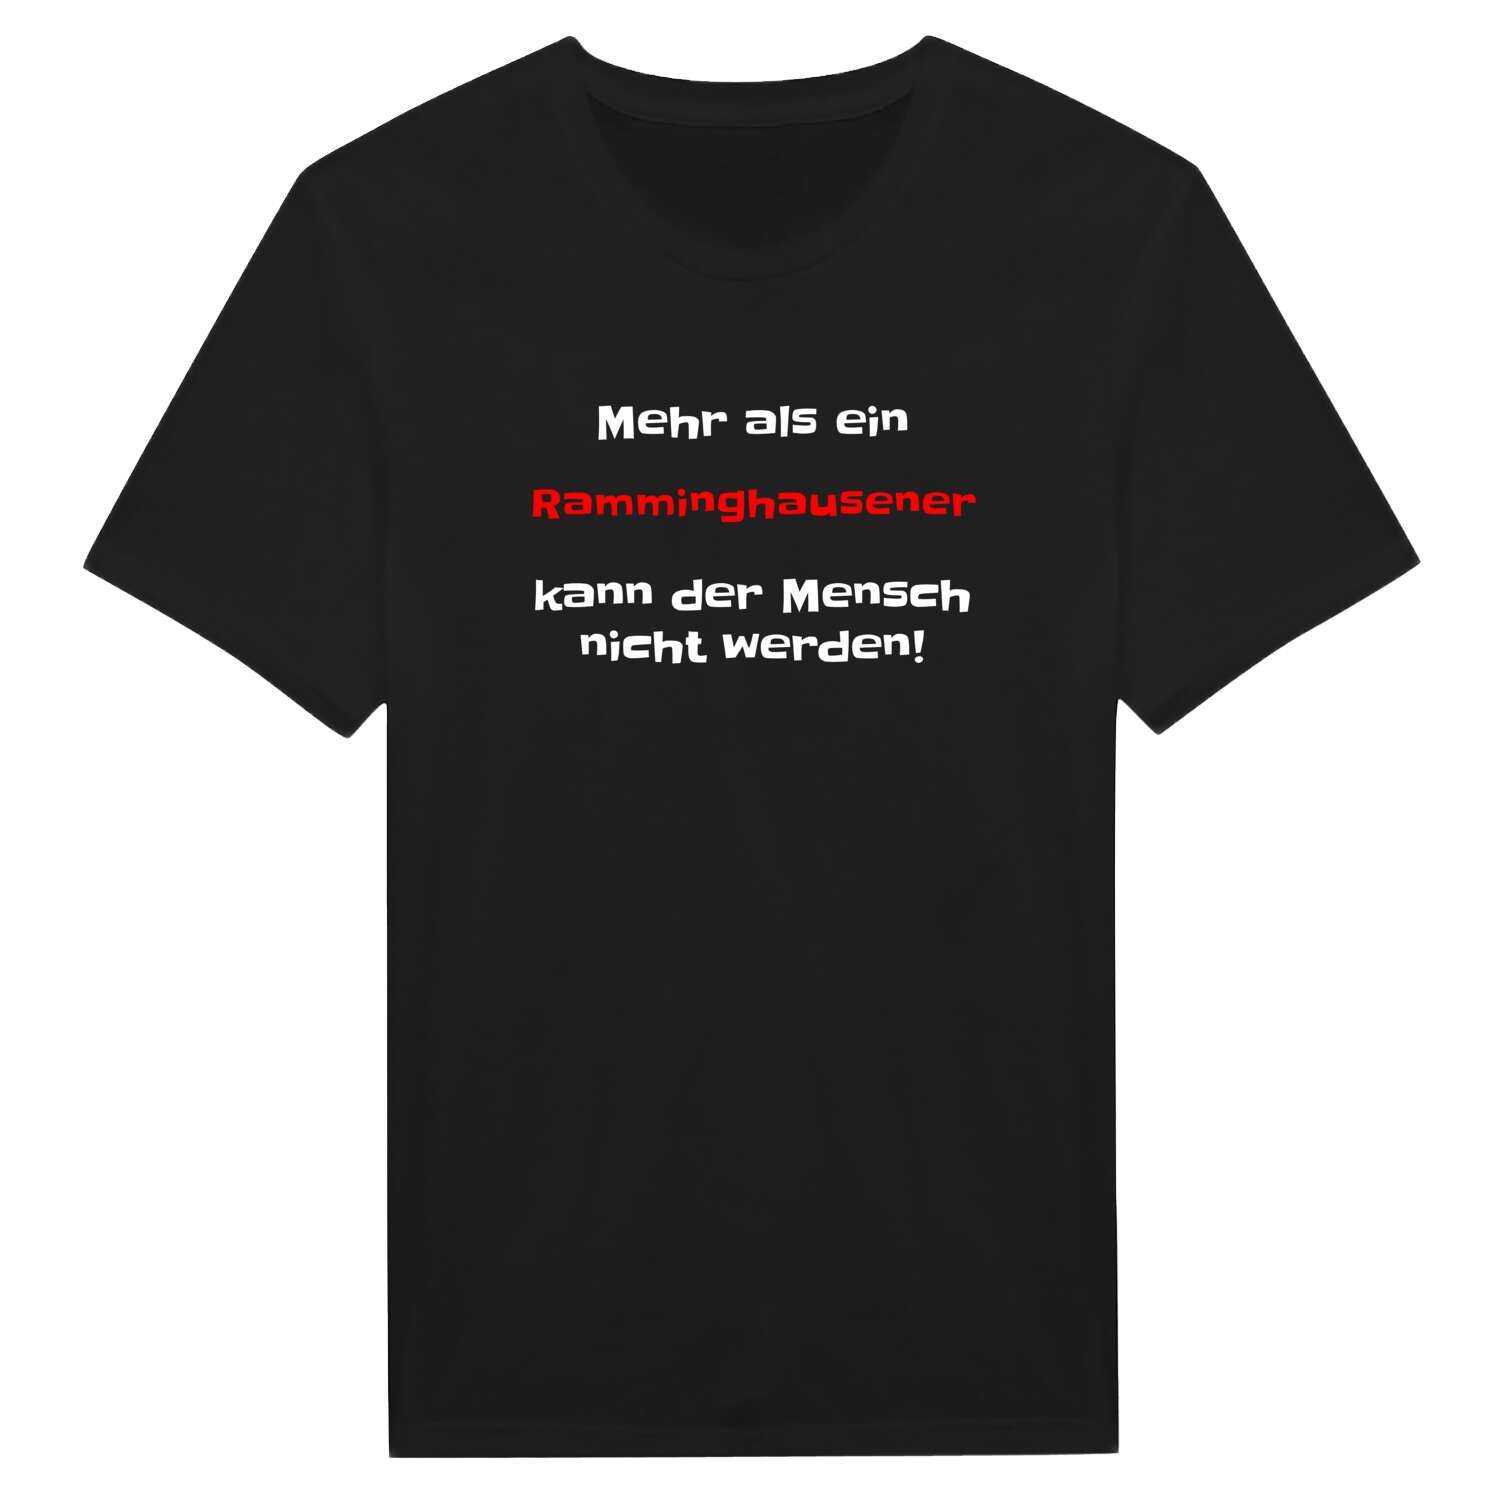 Ramminghausen T-Shirt »Mehr als ein«